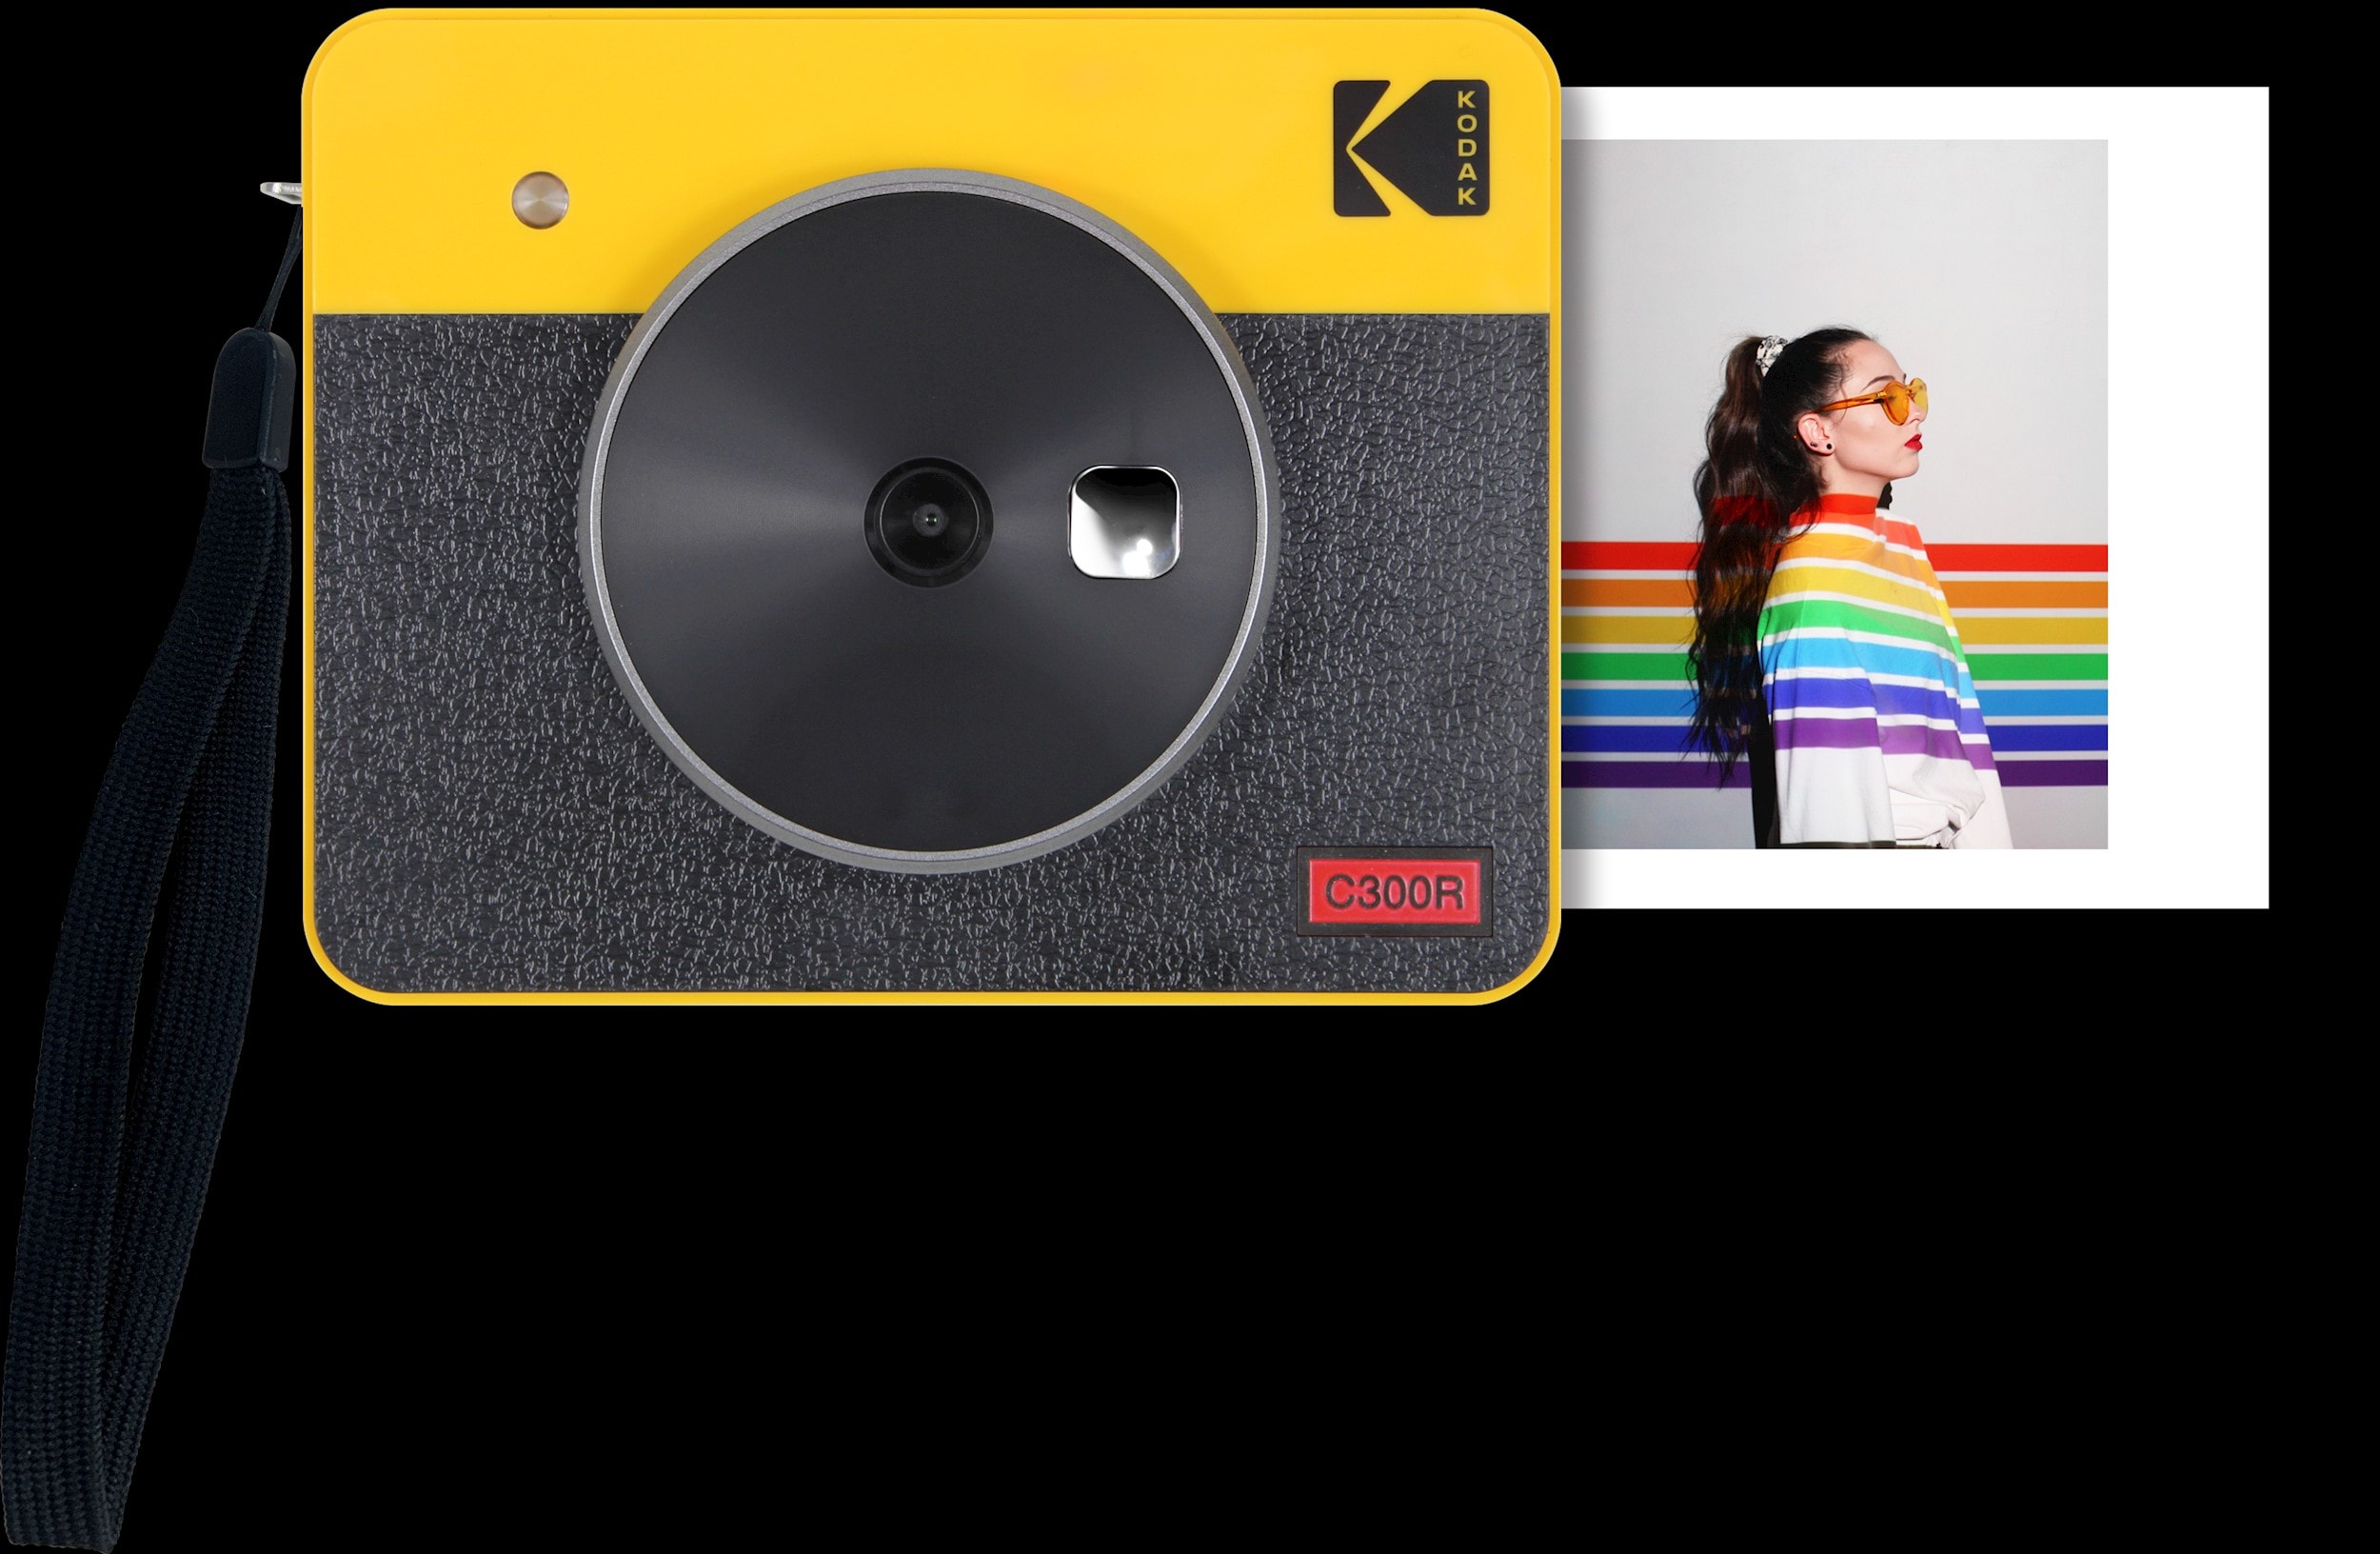 Cette imprimante de Kodak imprime facilement les photos dans votre téléphone